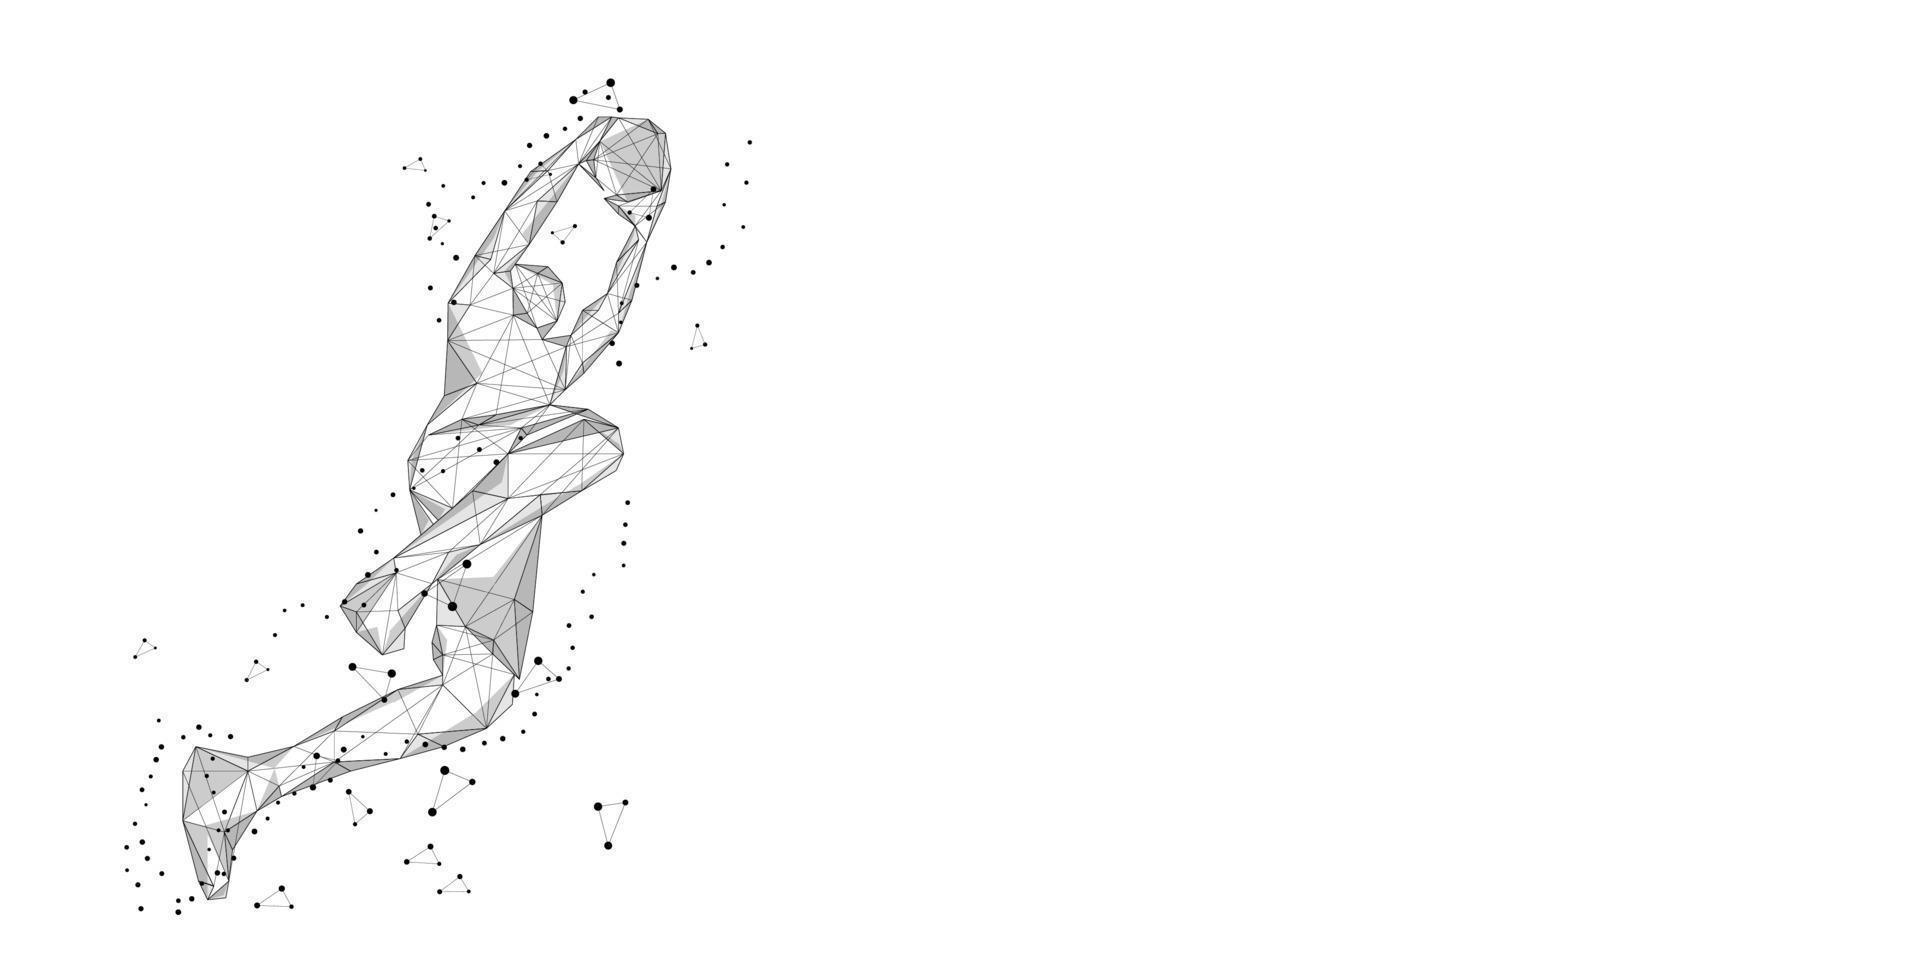 joueur de basket-ball solitaire sur fond blanc mouvement slam dunk abstrait low poly filaire illustration vectorielle numérique saut slam dunk vecteur